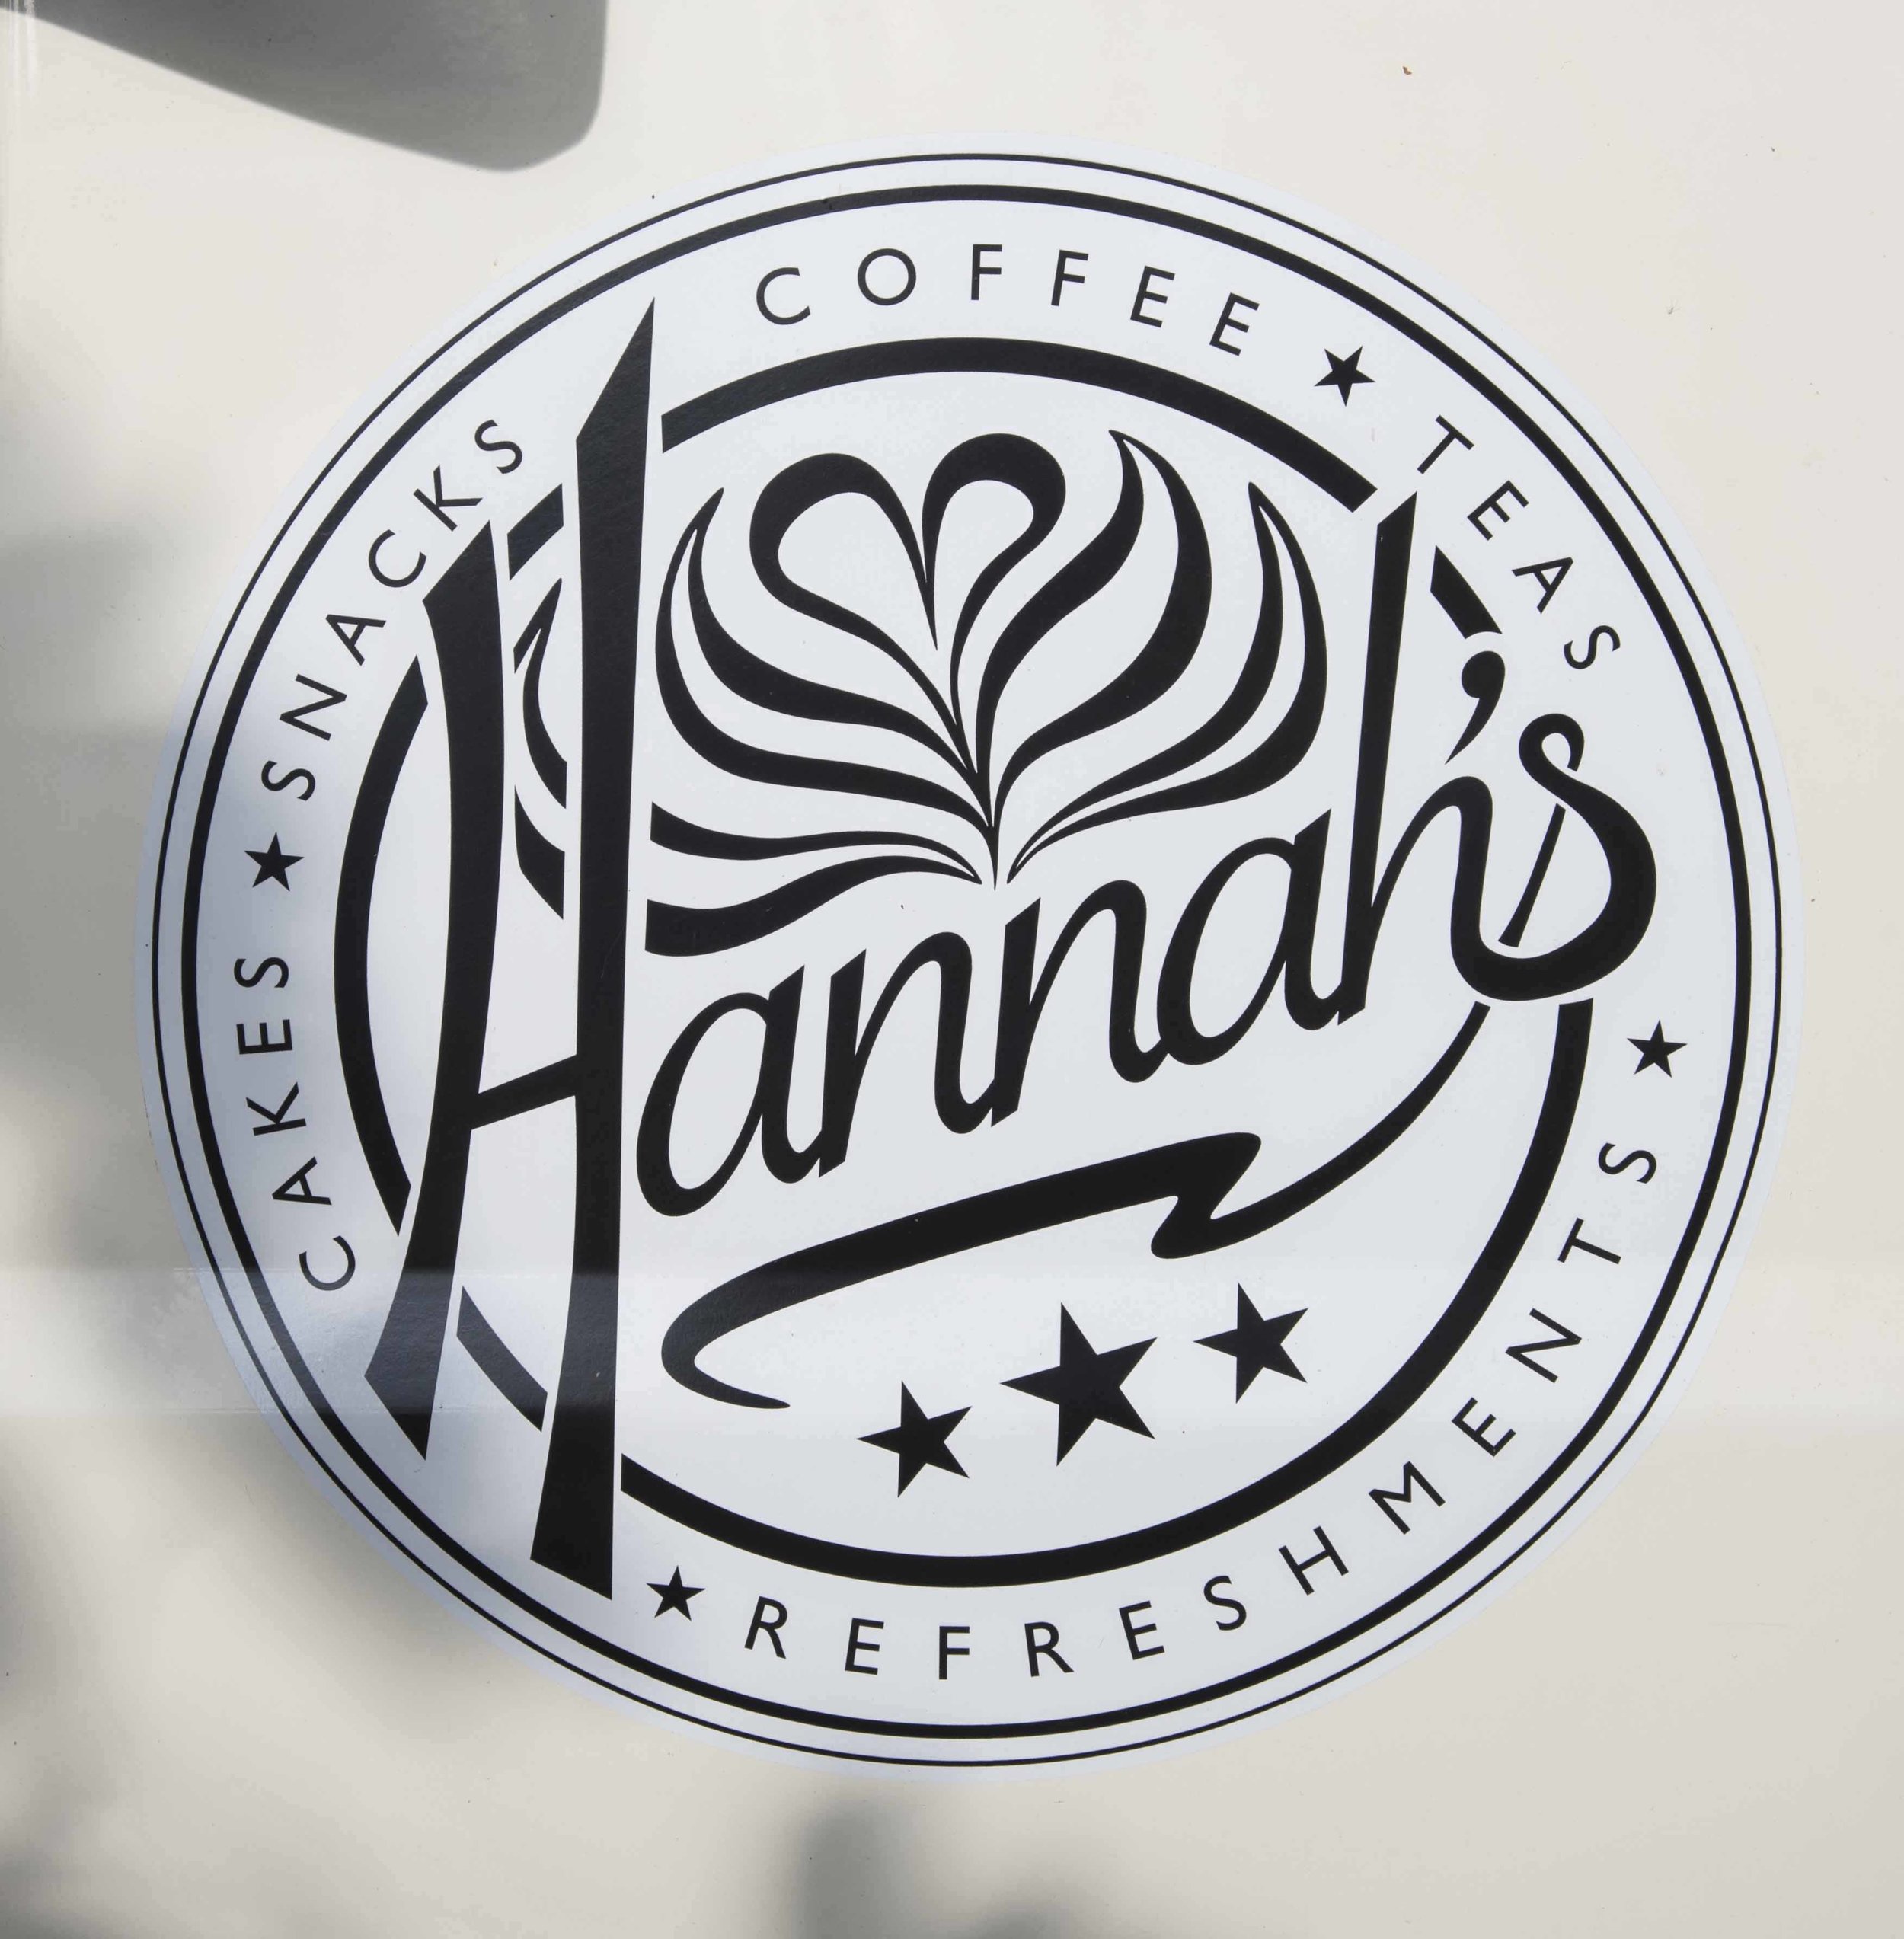 Hannah's (coffee van) logo.jpg